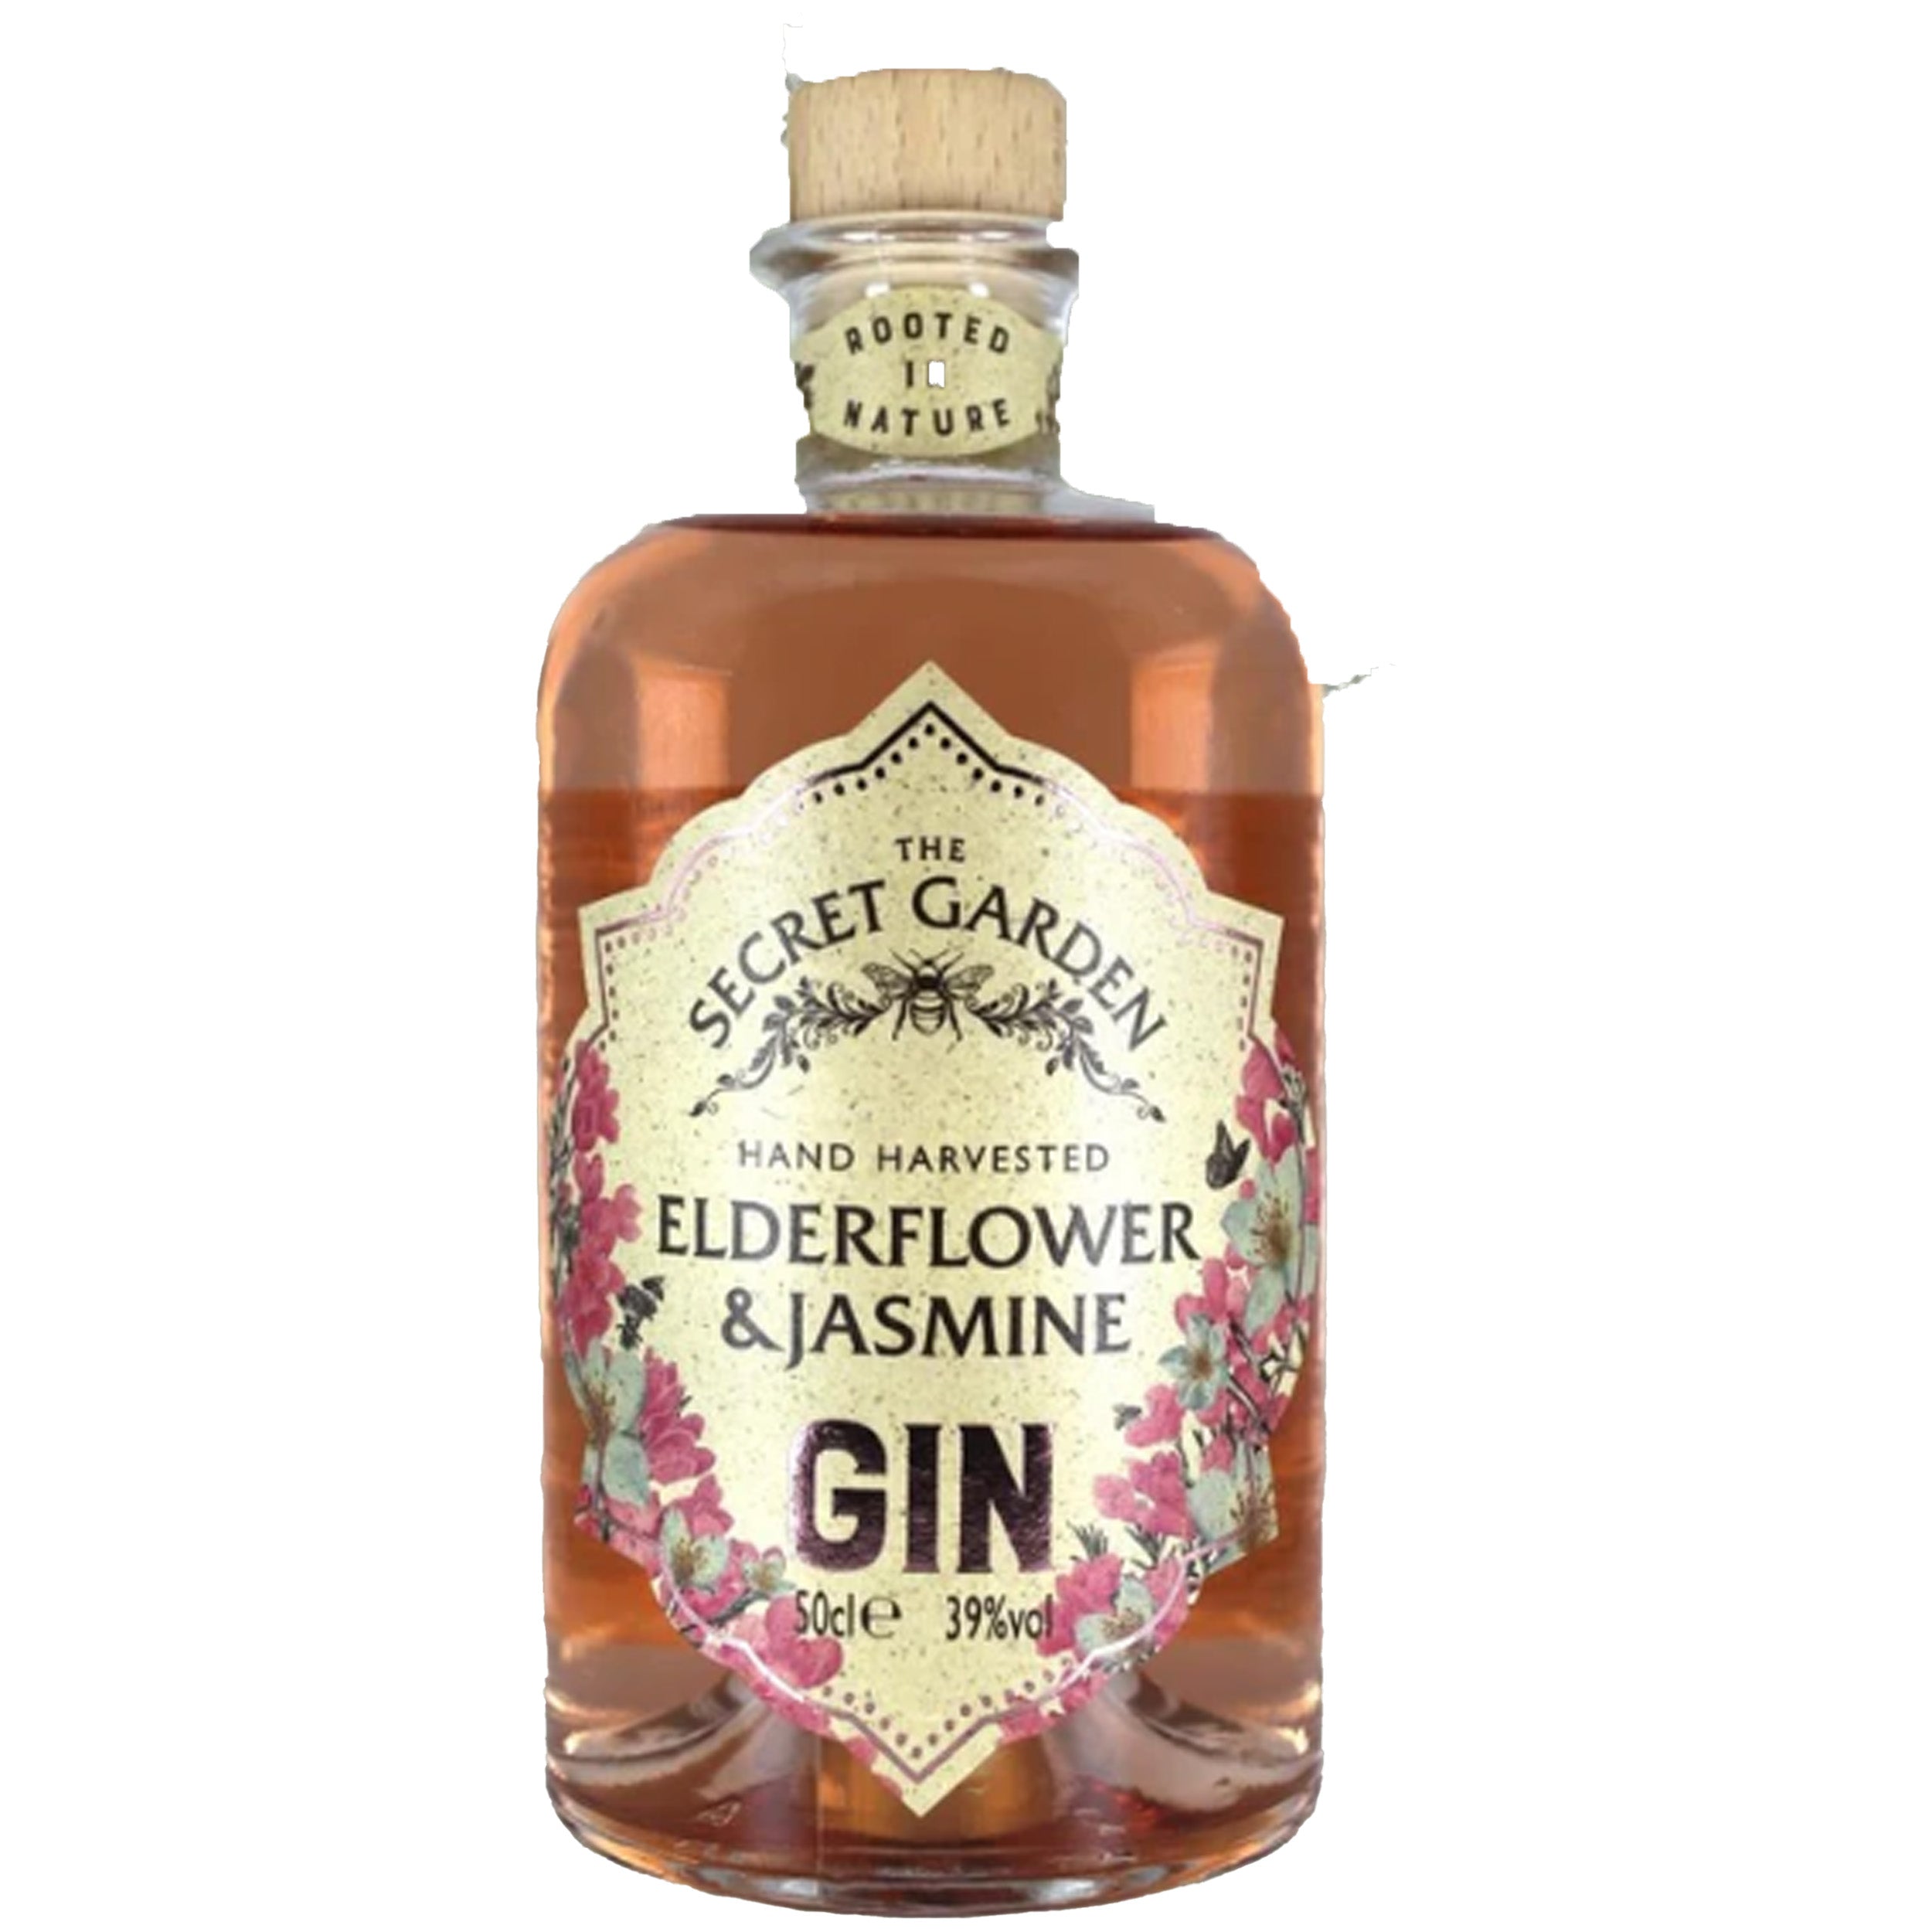 Liquor Herb Gin The Garden Pink – And Elderflower Chips Jasmine